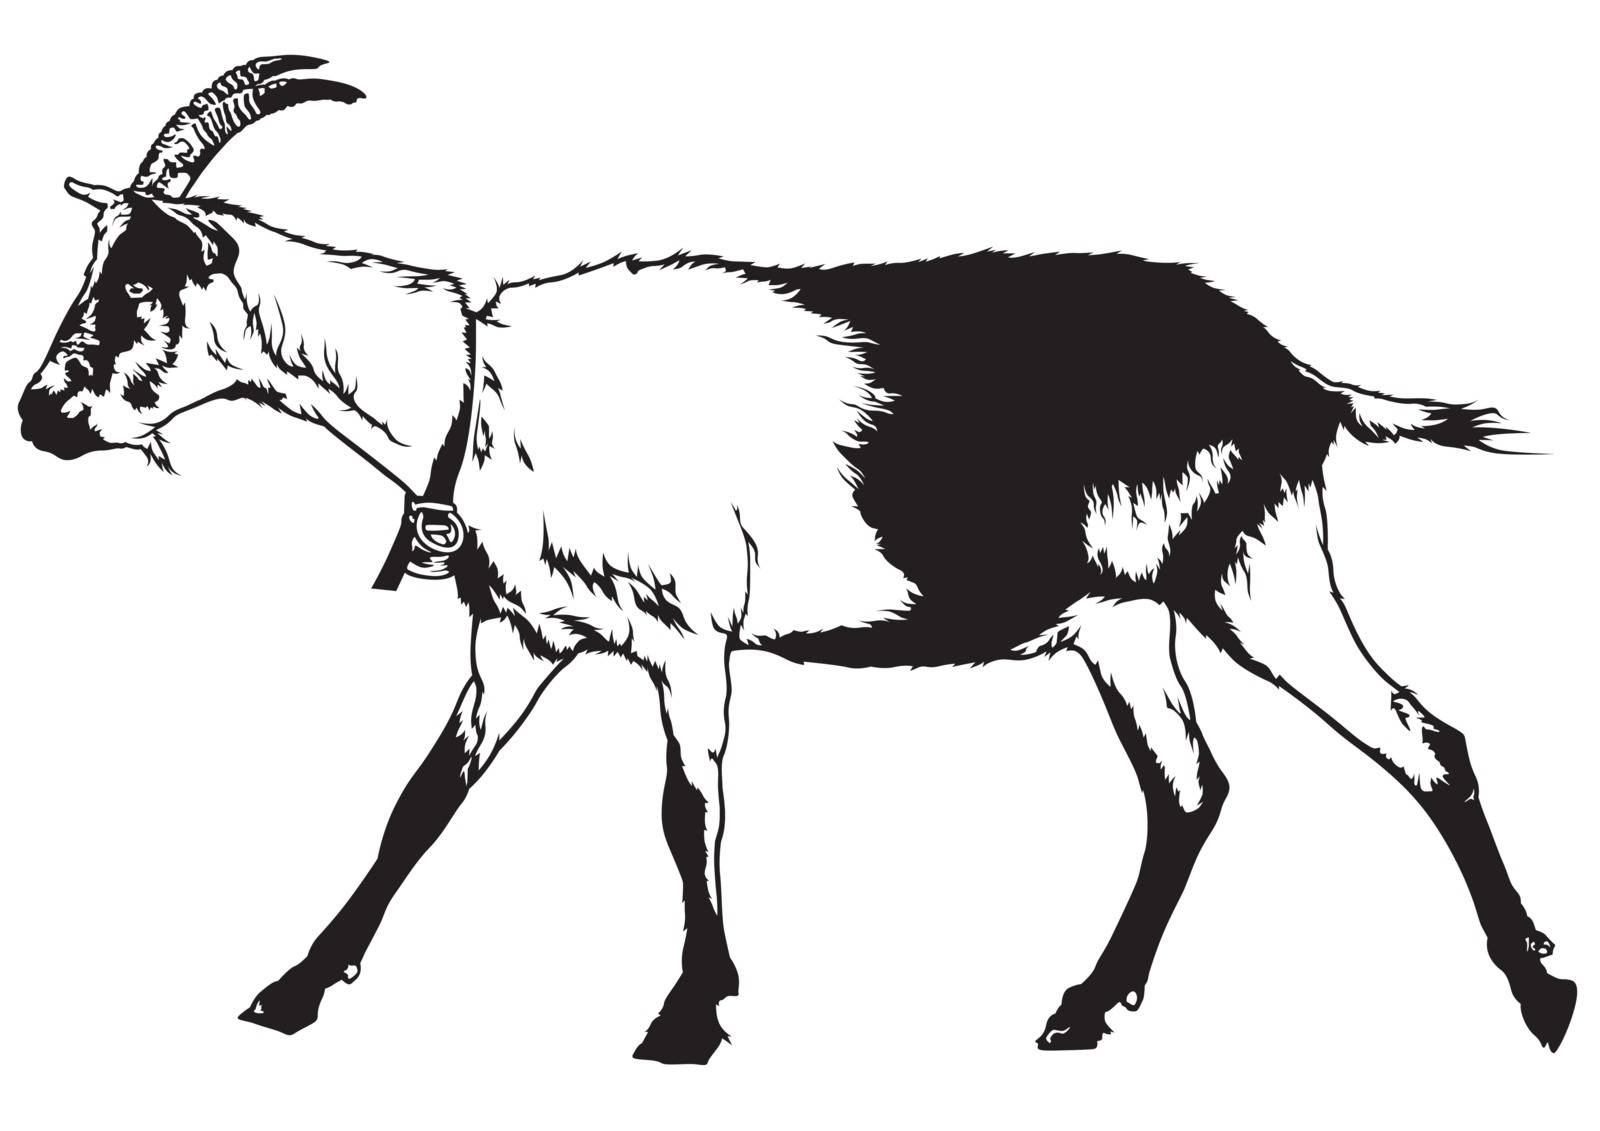 Goat (Capra aegagrus hircus) - Black and White Drawing Illustration, Vector